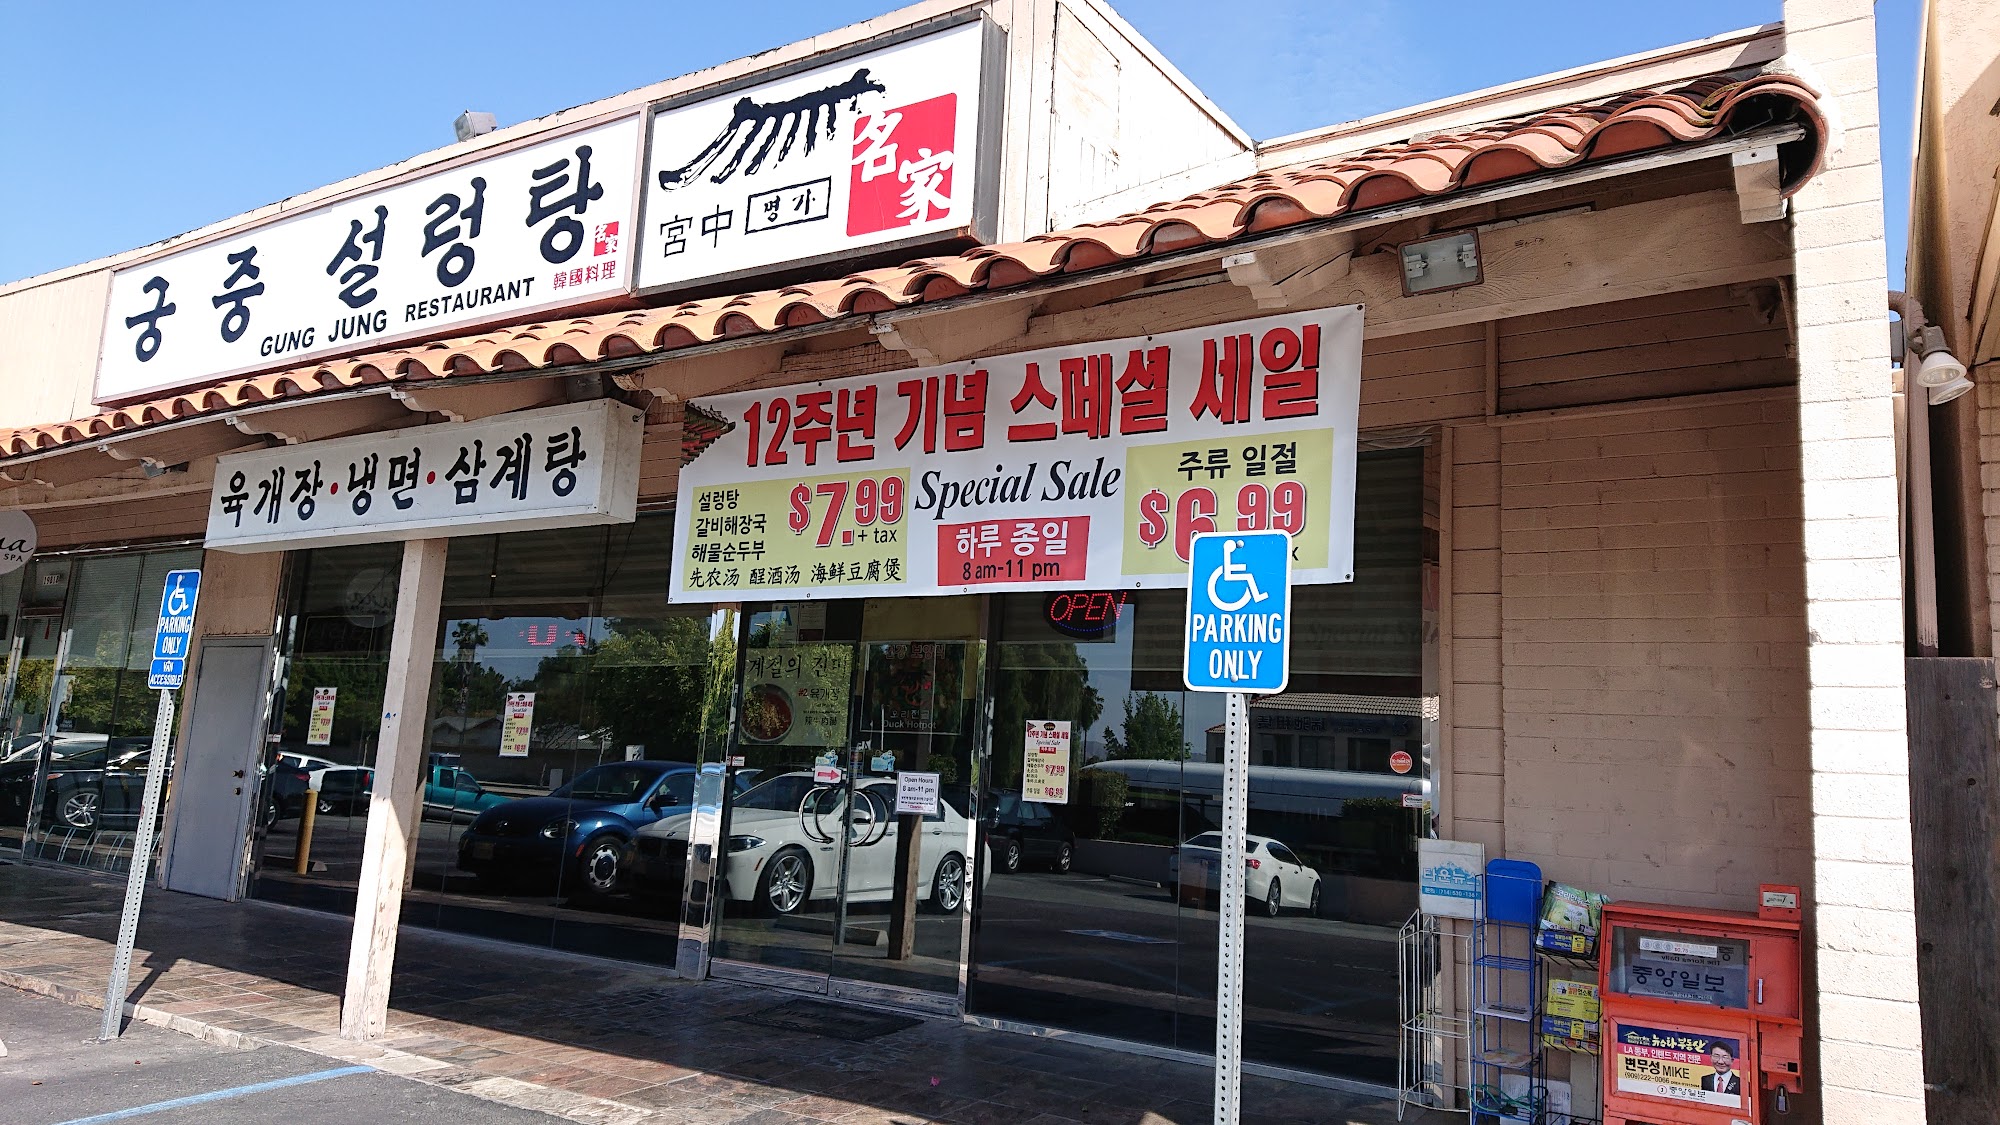 Gung Jung Restaurant